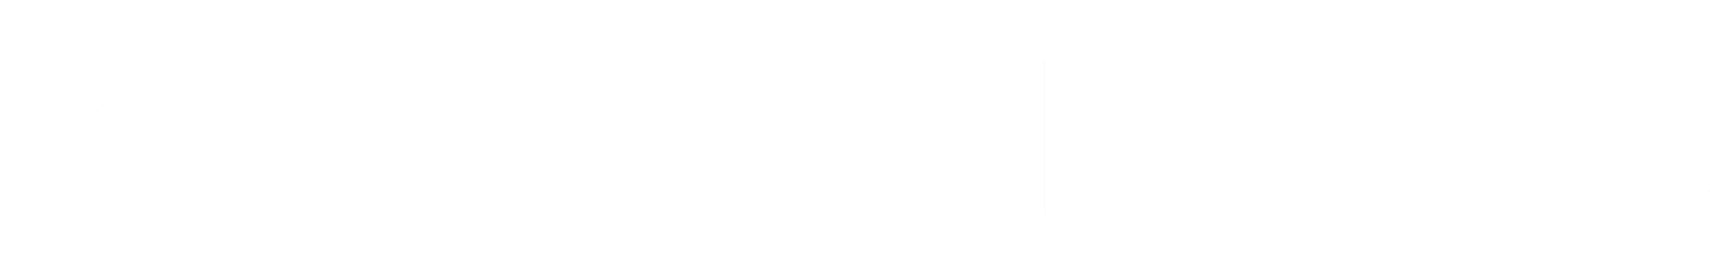 Ocean Co. logo